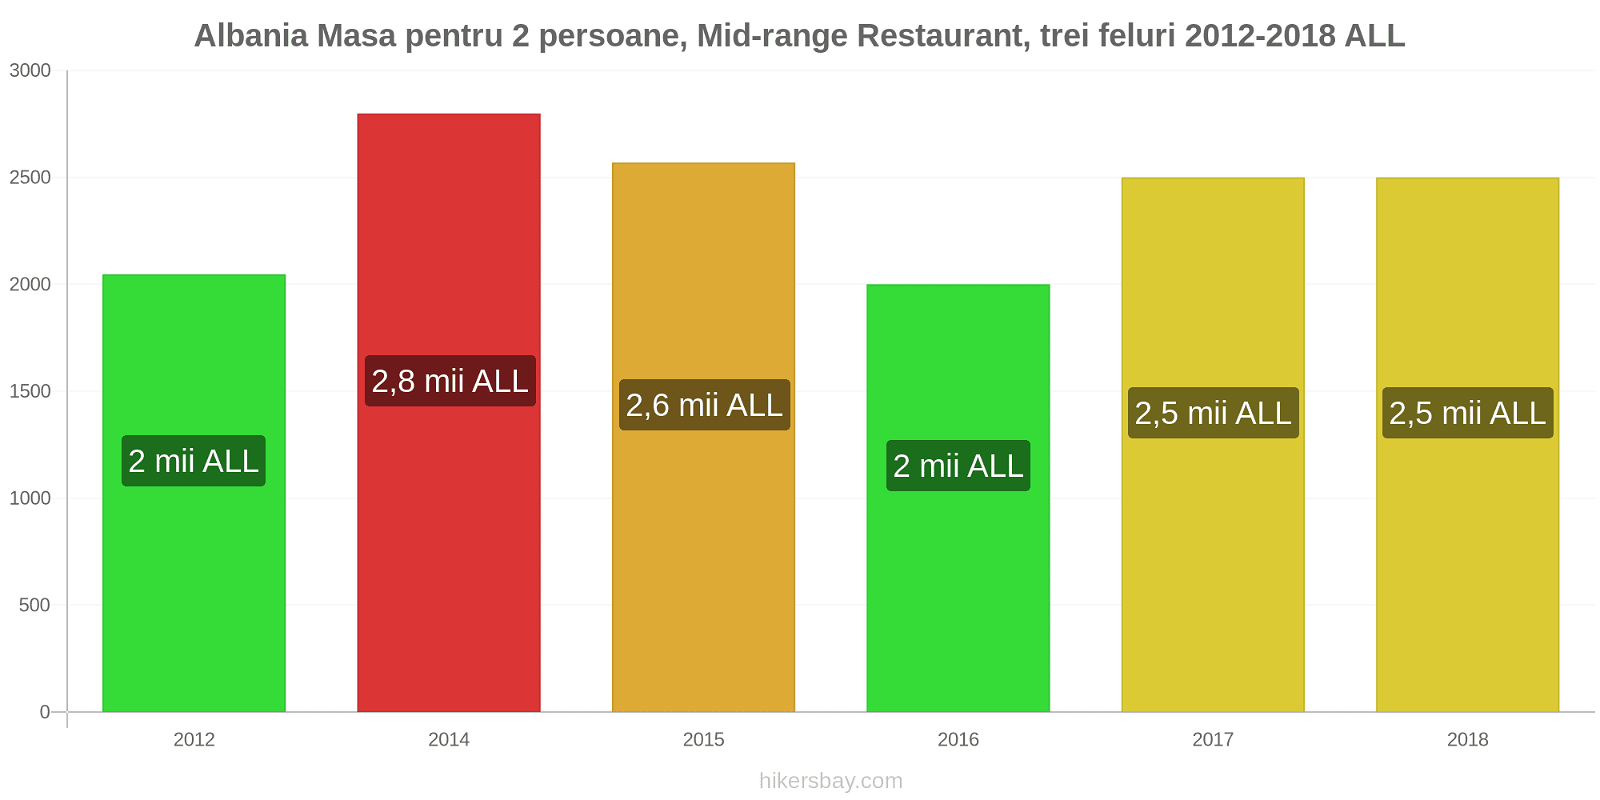 Albania schimbări de prețuri Masă pentru 2 persoane, restaurant de gamă medie, trei feluri de mâncare hikersbay.com